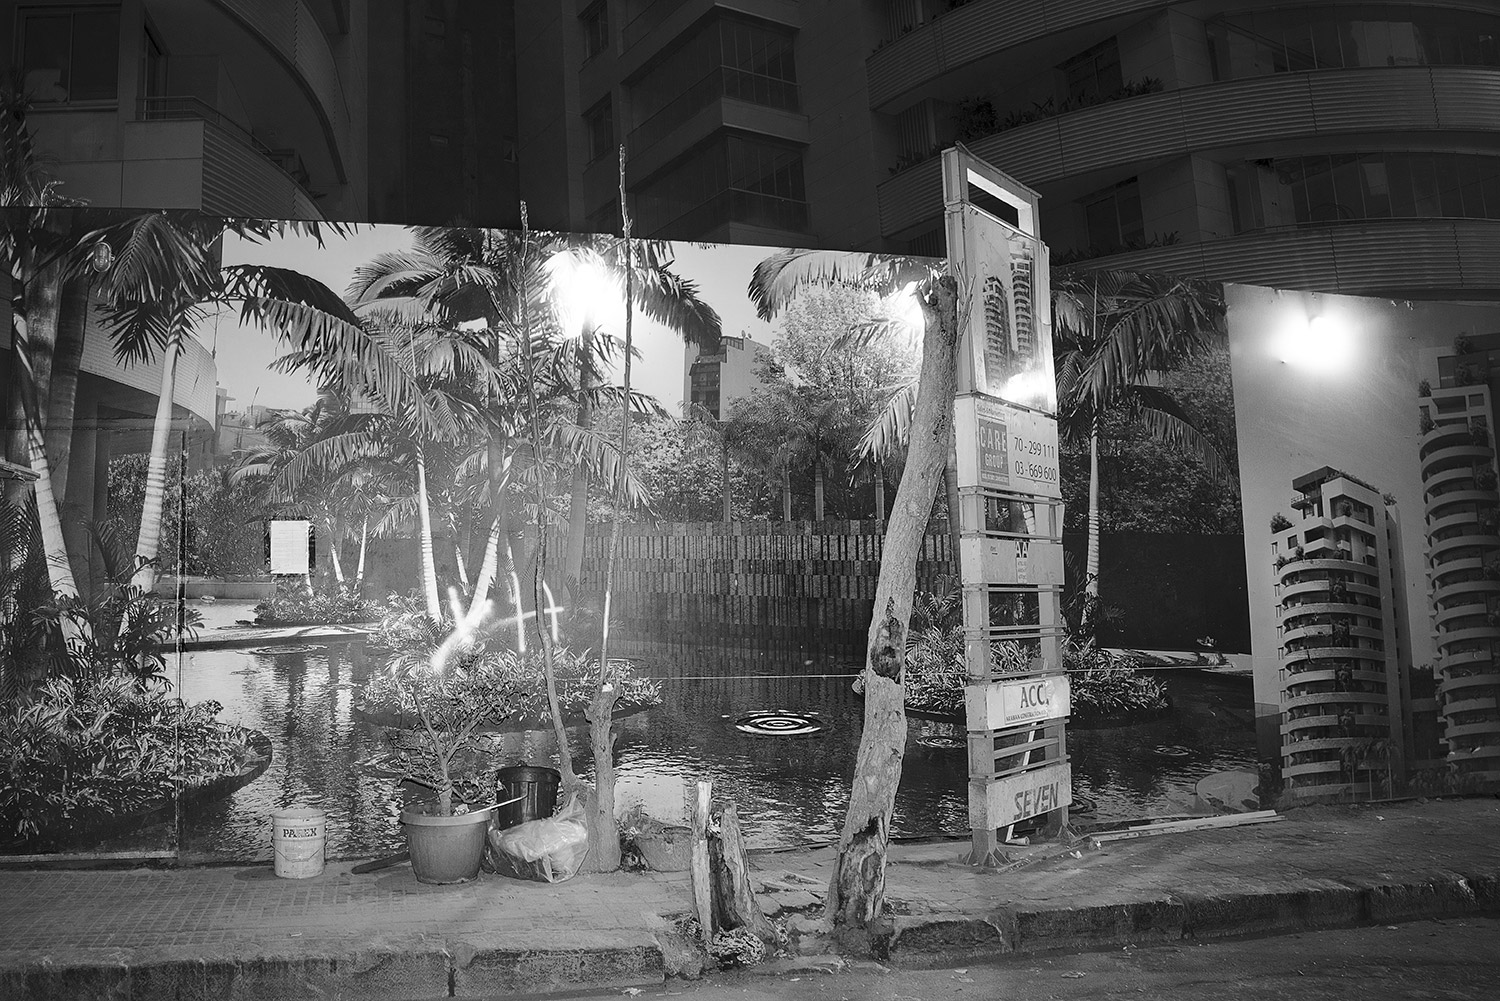   Ripple. Beirut, Lebanon, 2017   Archival Fiber Inkjet Print  16 x 24 inches 